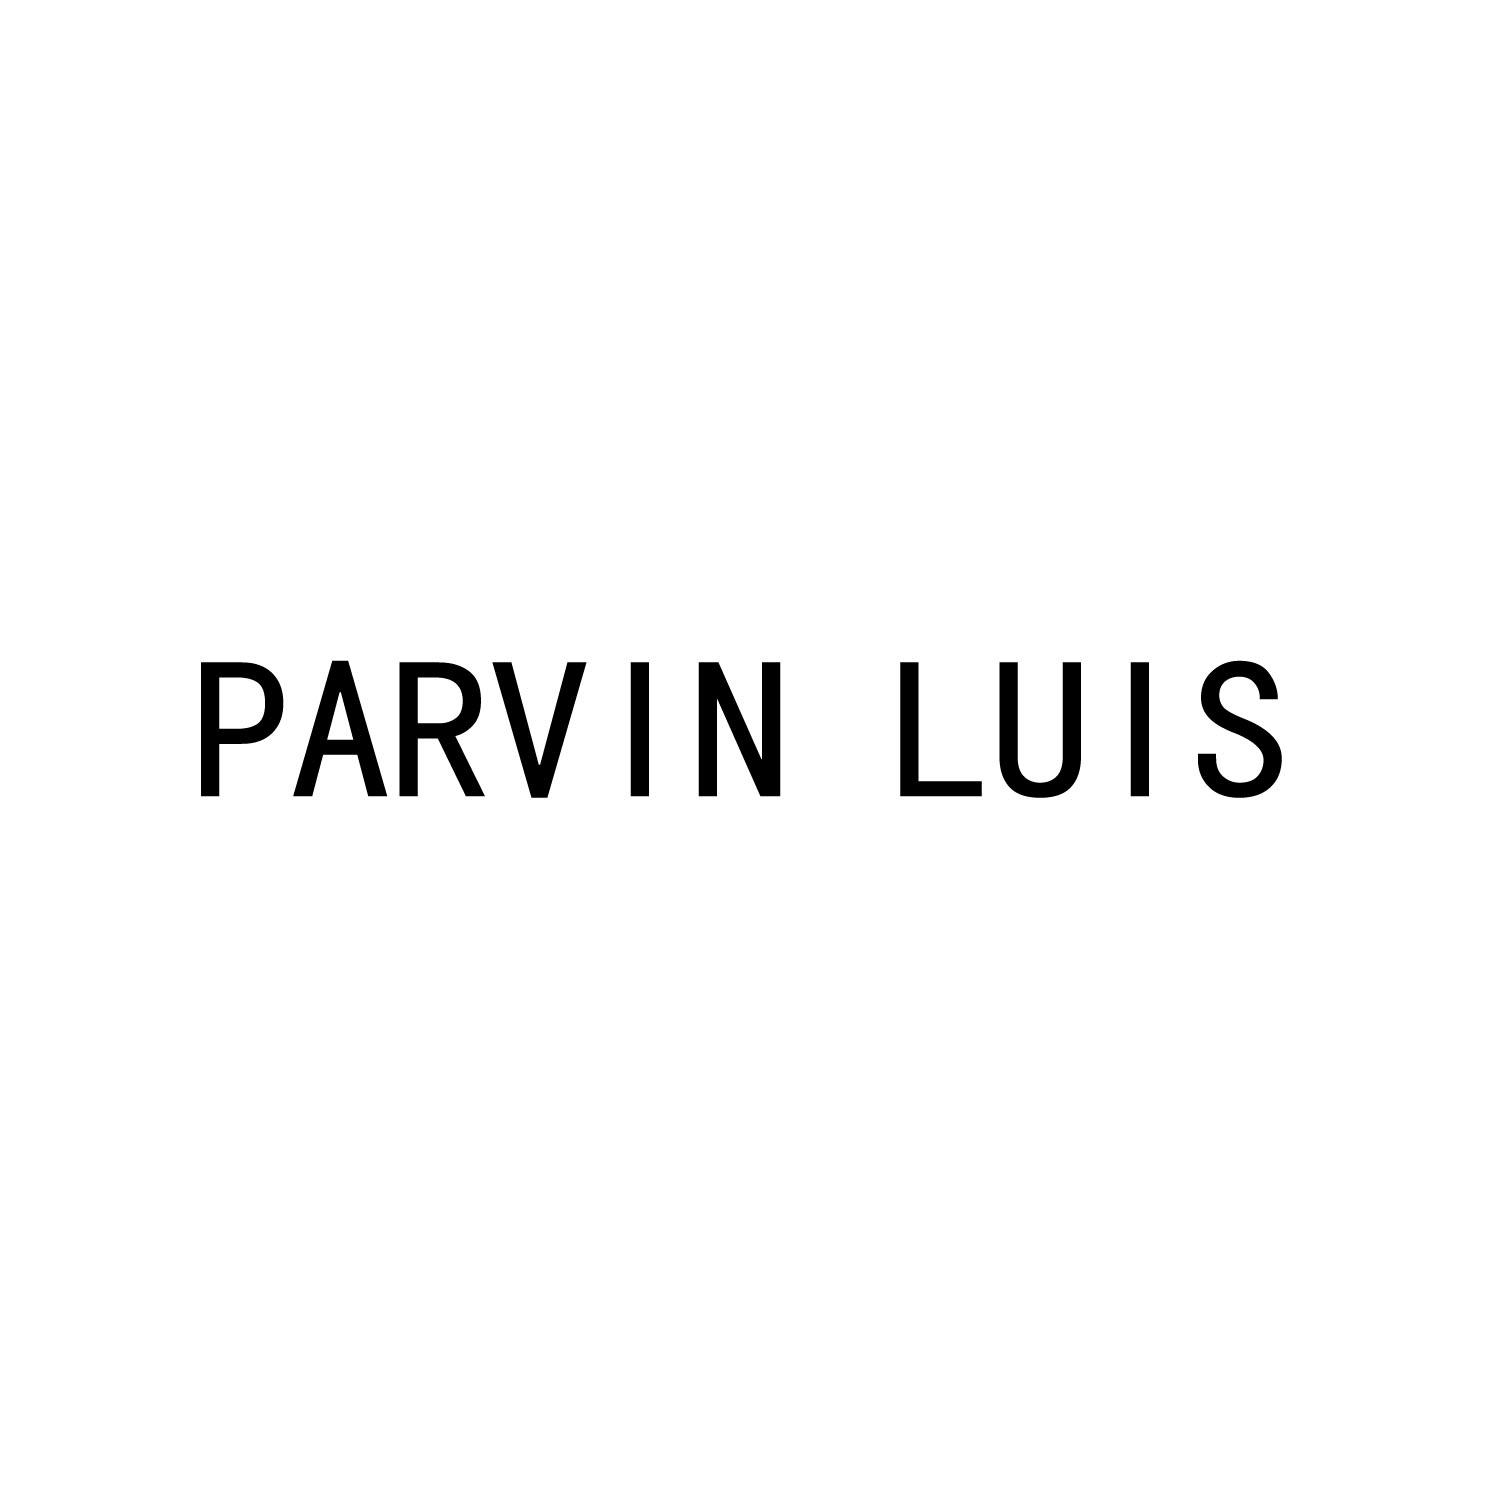 PARVIN LUIS